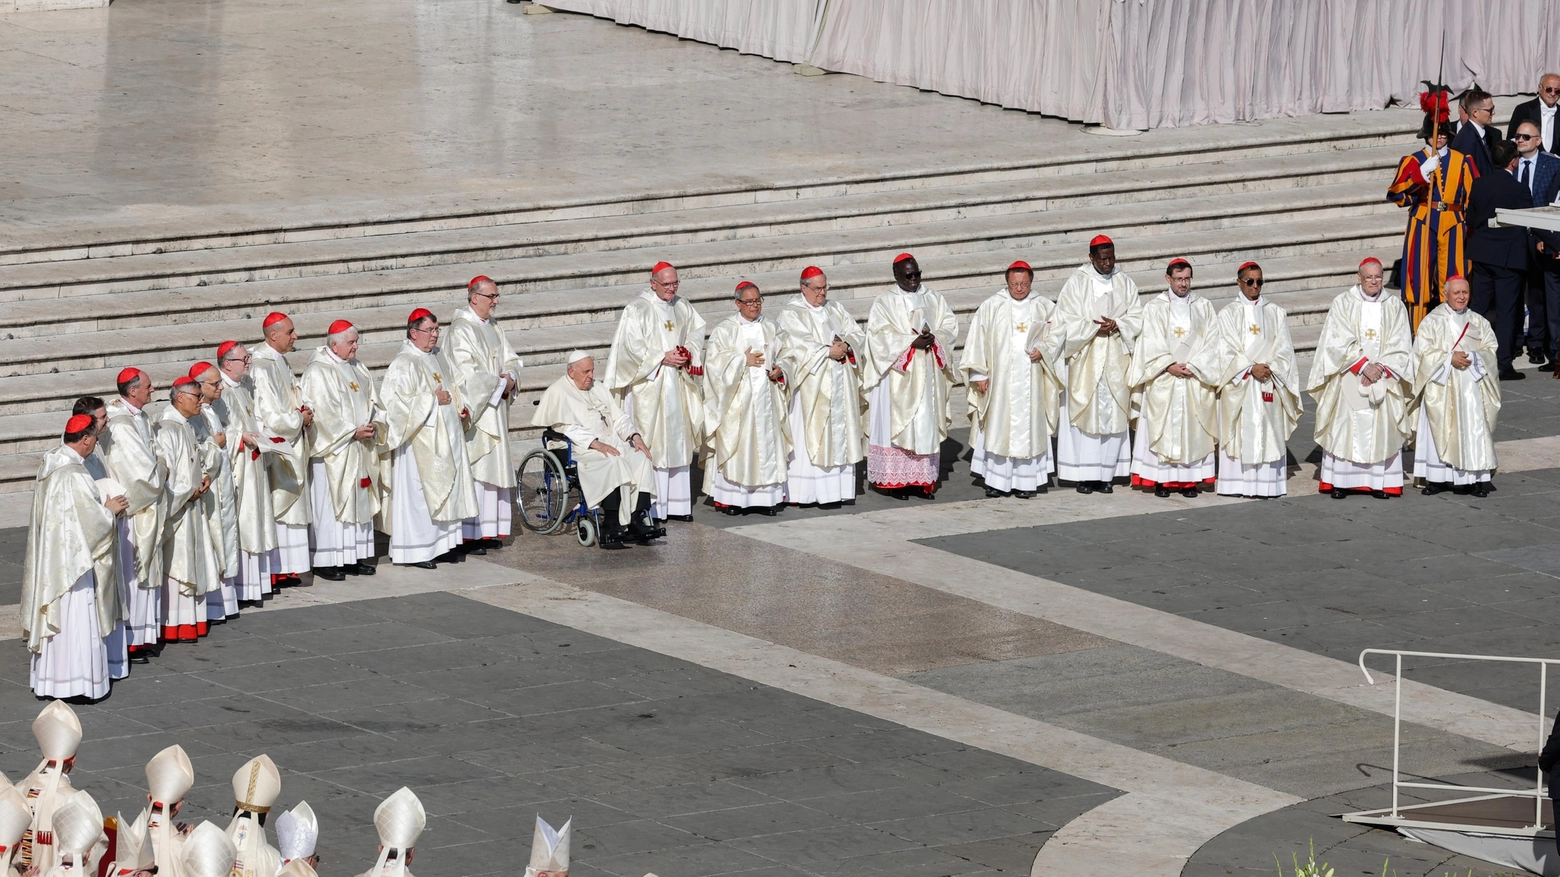 Francesco ha presieduto la cerimonia d'avvio dell'assemblea dedicata alla sinodalità. Tensione fra conservatori e liberal, dal Pontefice appello a comunione e dialogo